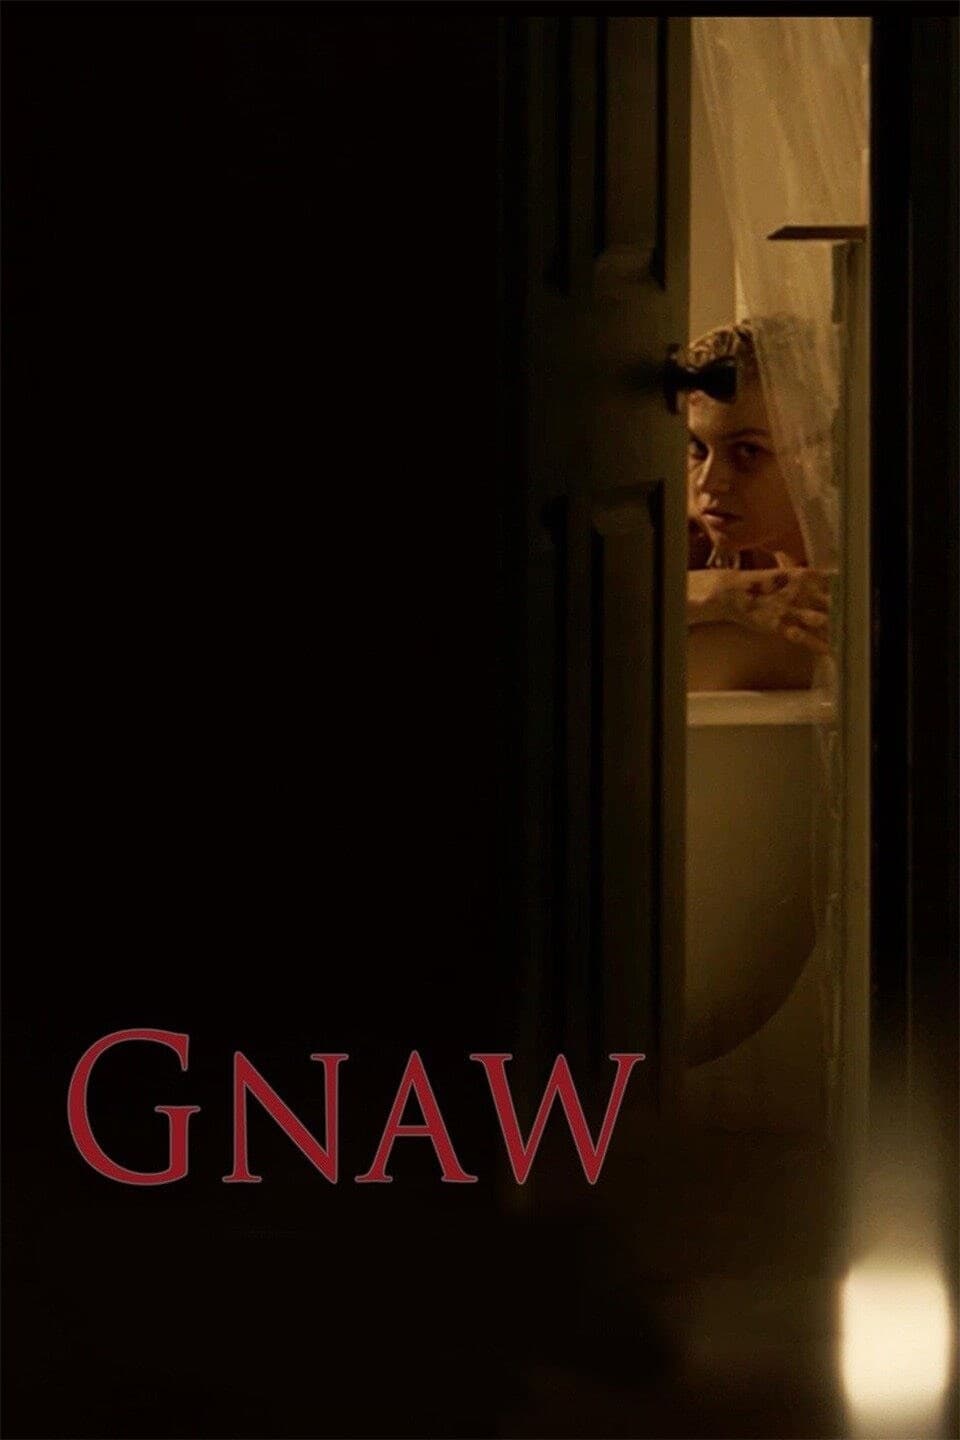 Gnaw (2017)